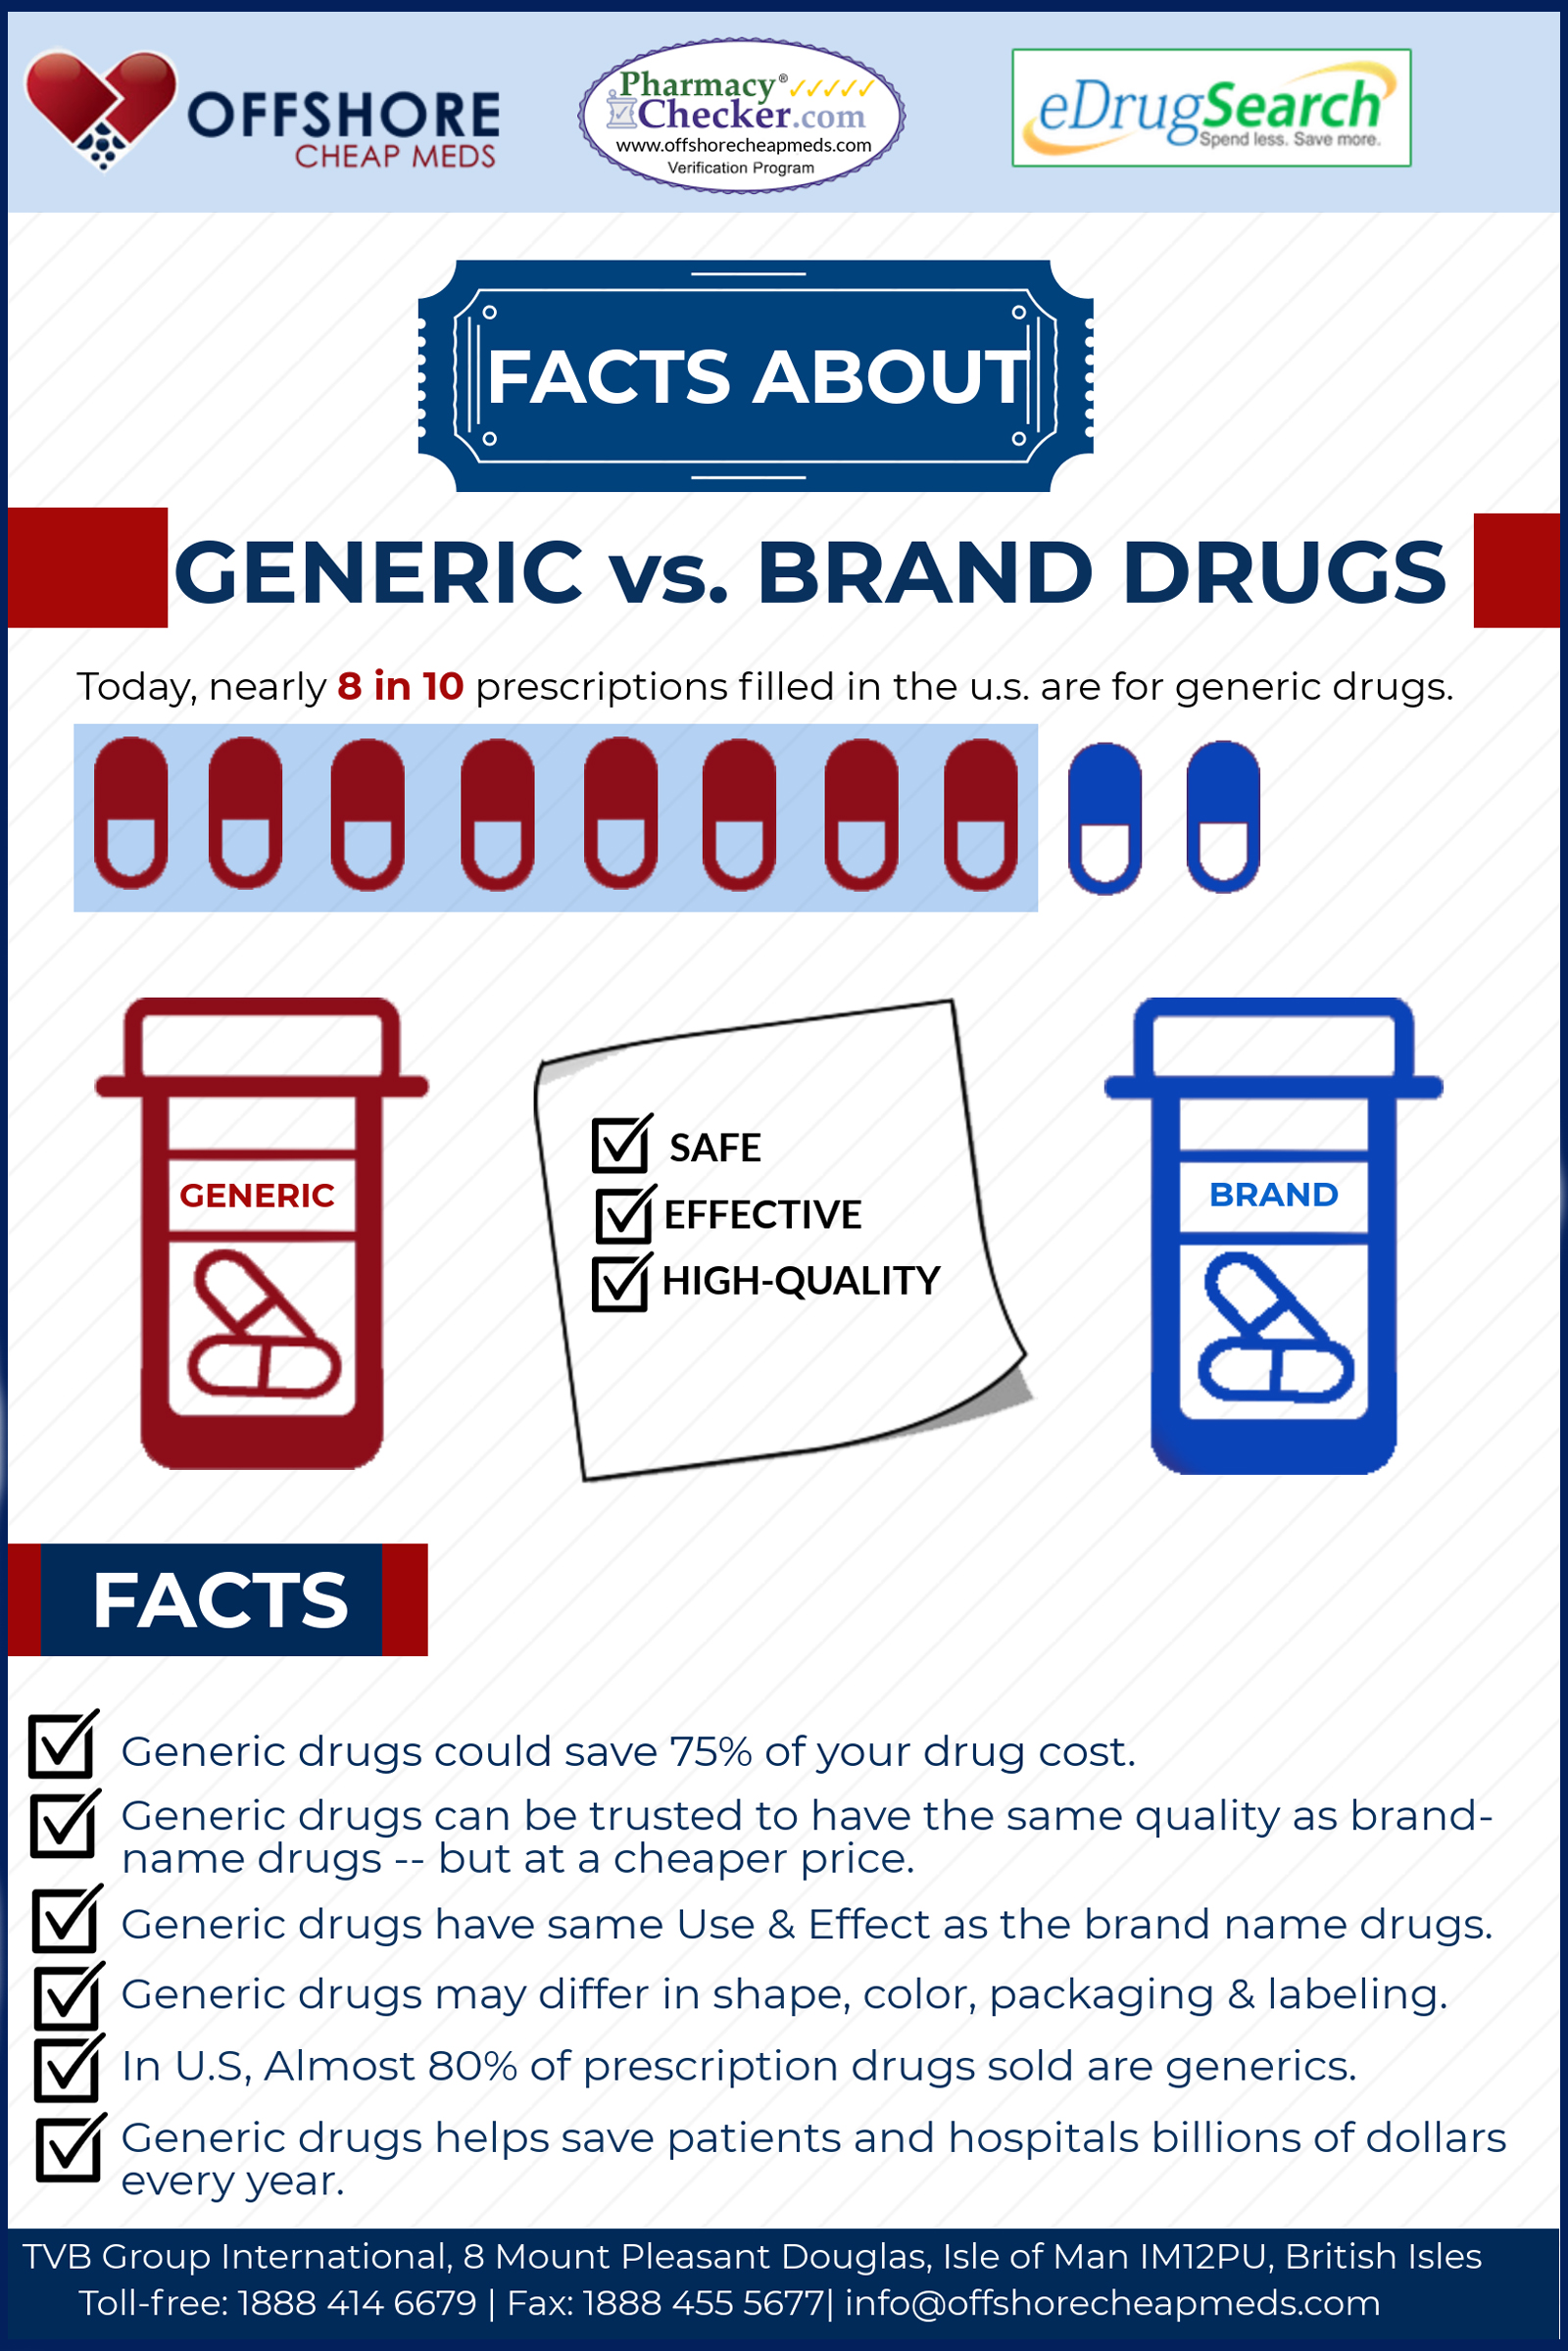 Generic vs Brand-name Drugs